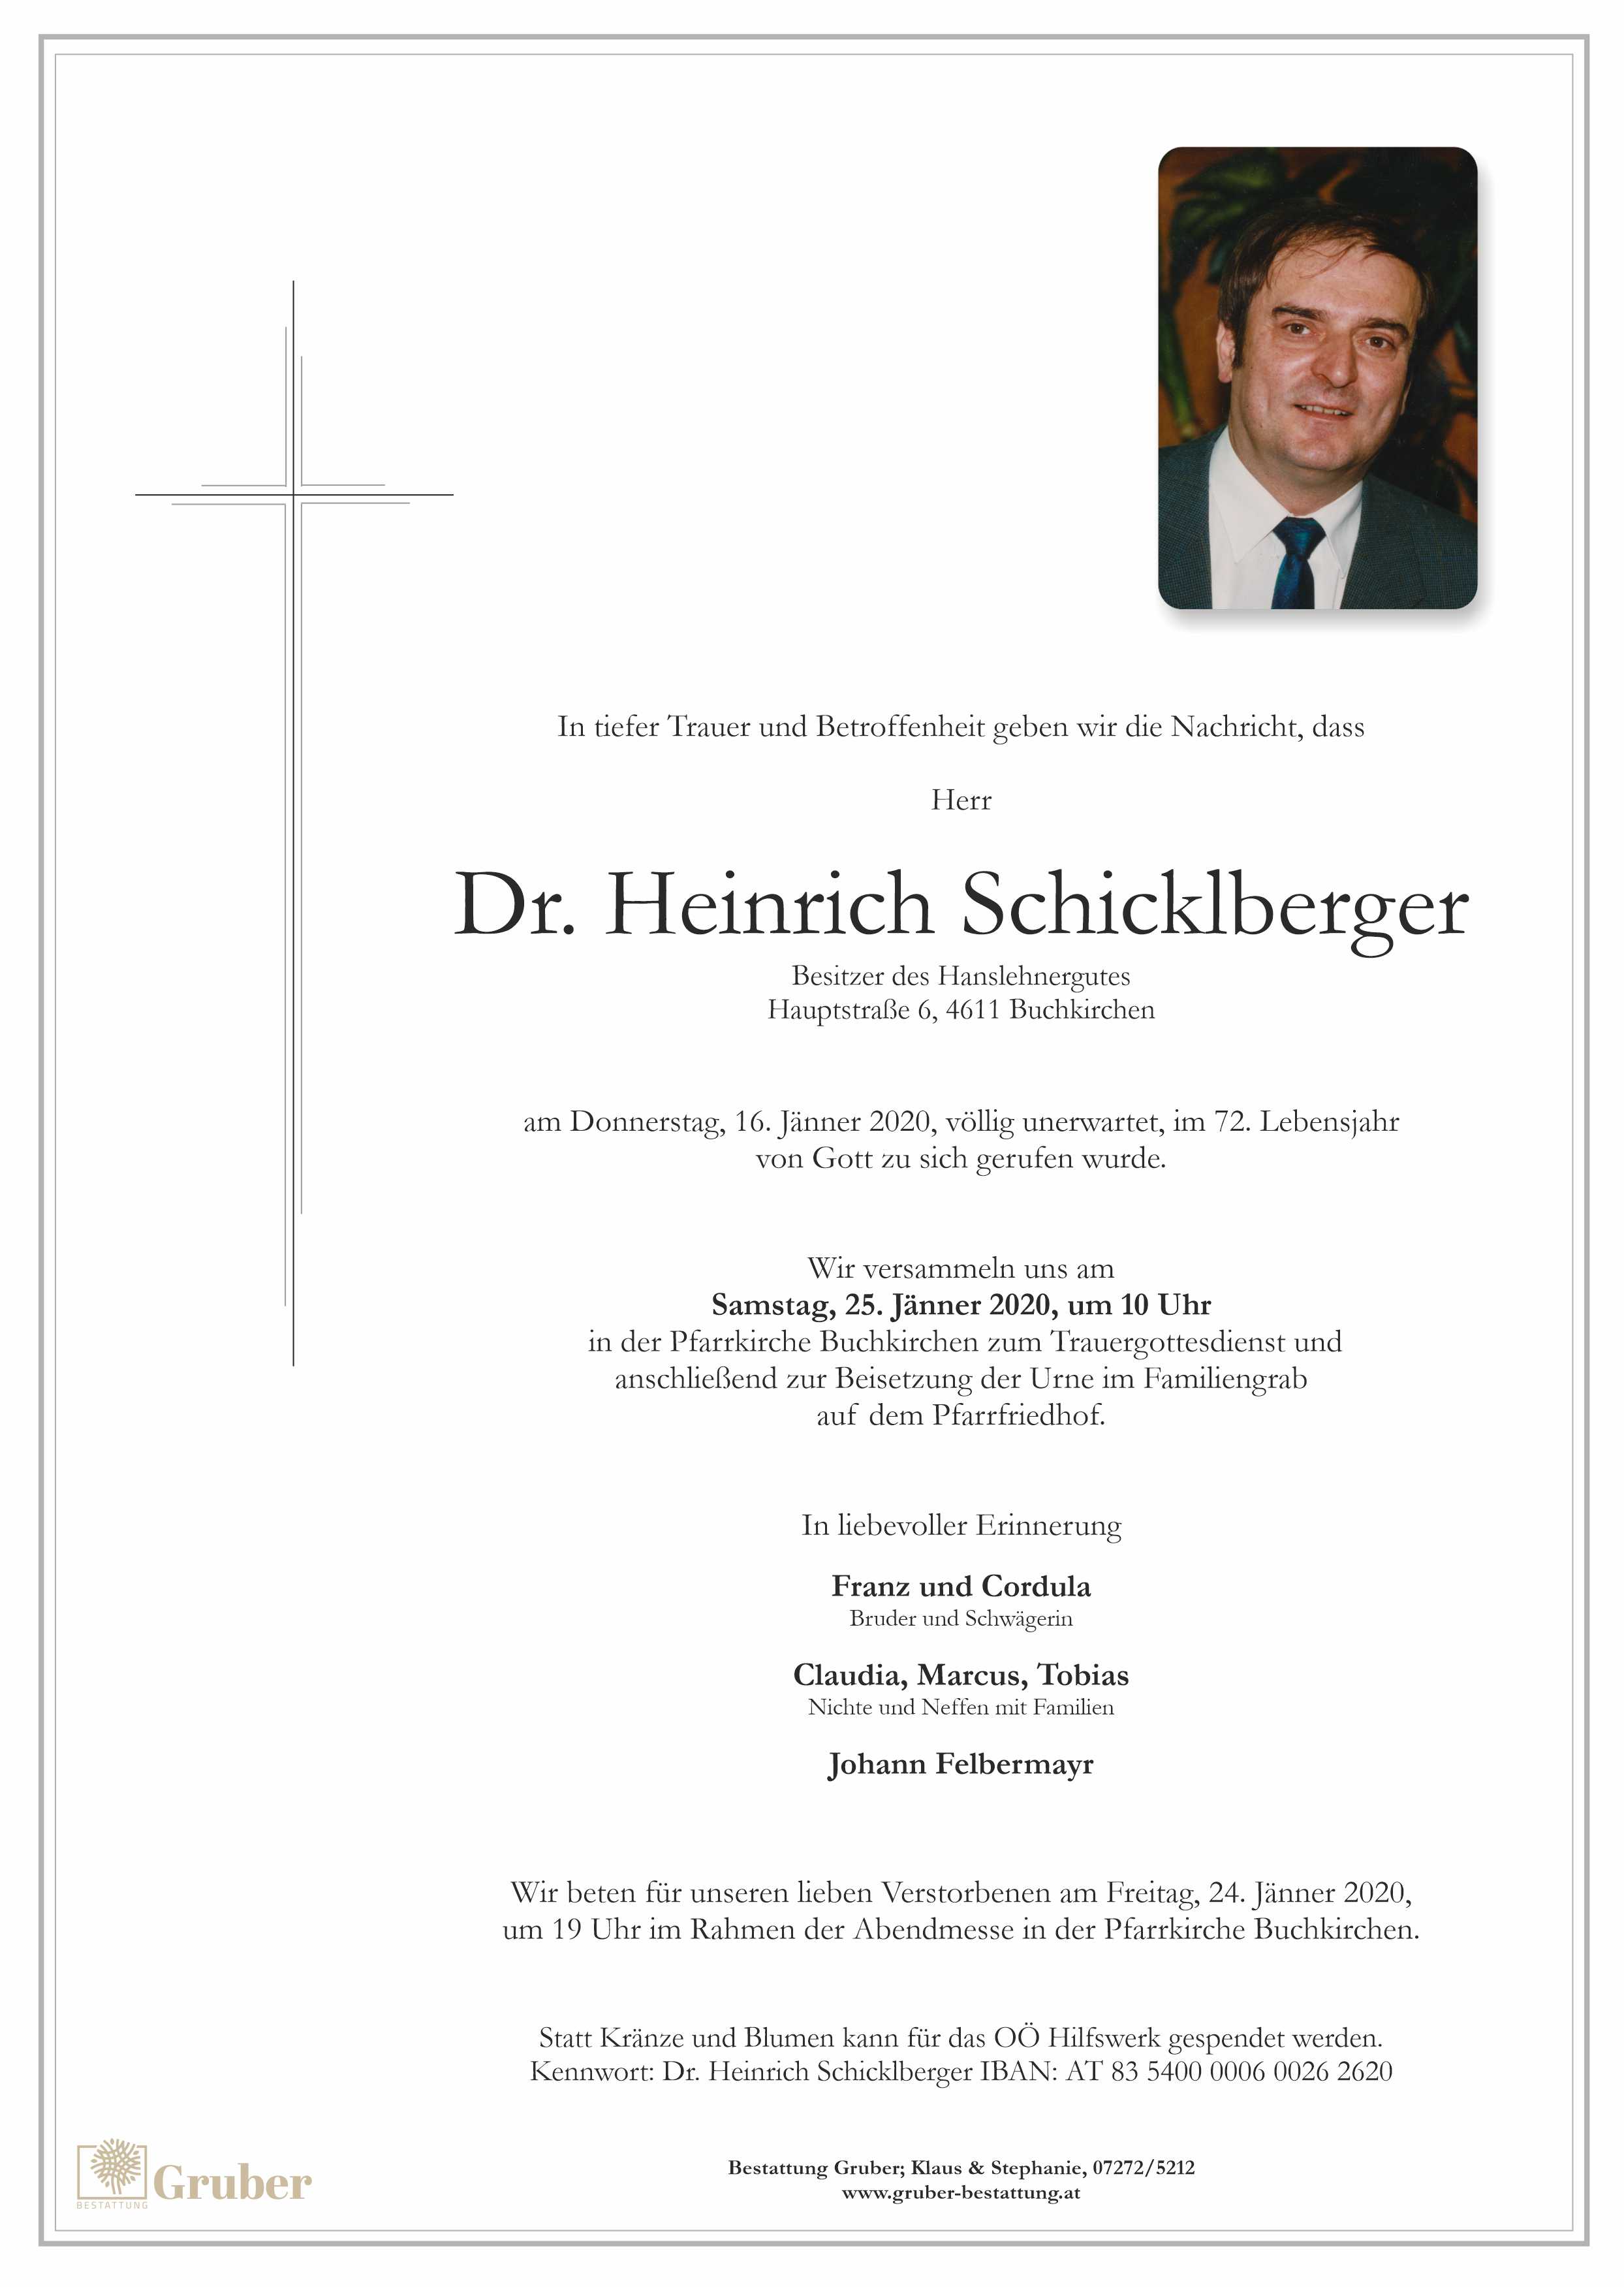 Dr. Heinrich Schicklberger (Buchkirchen)